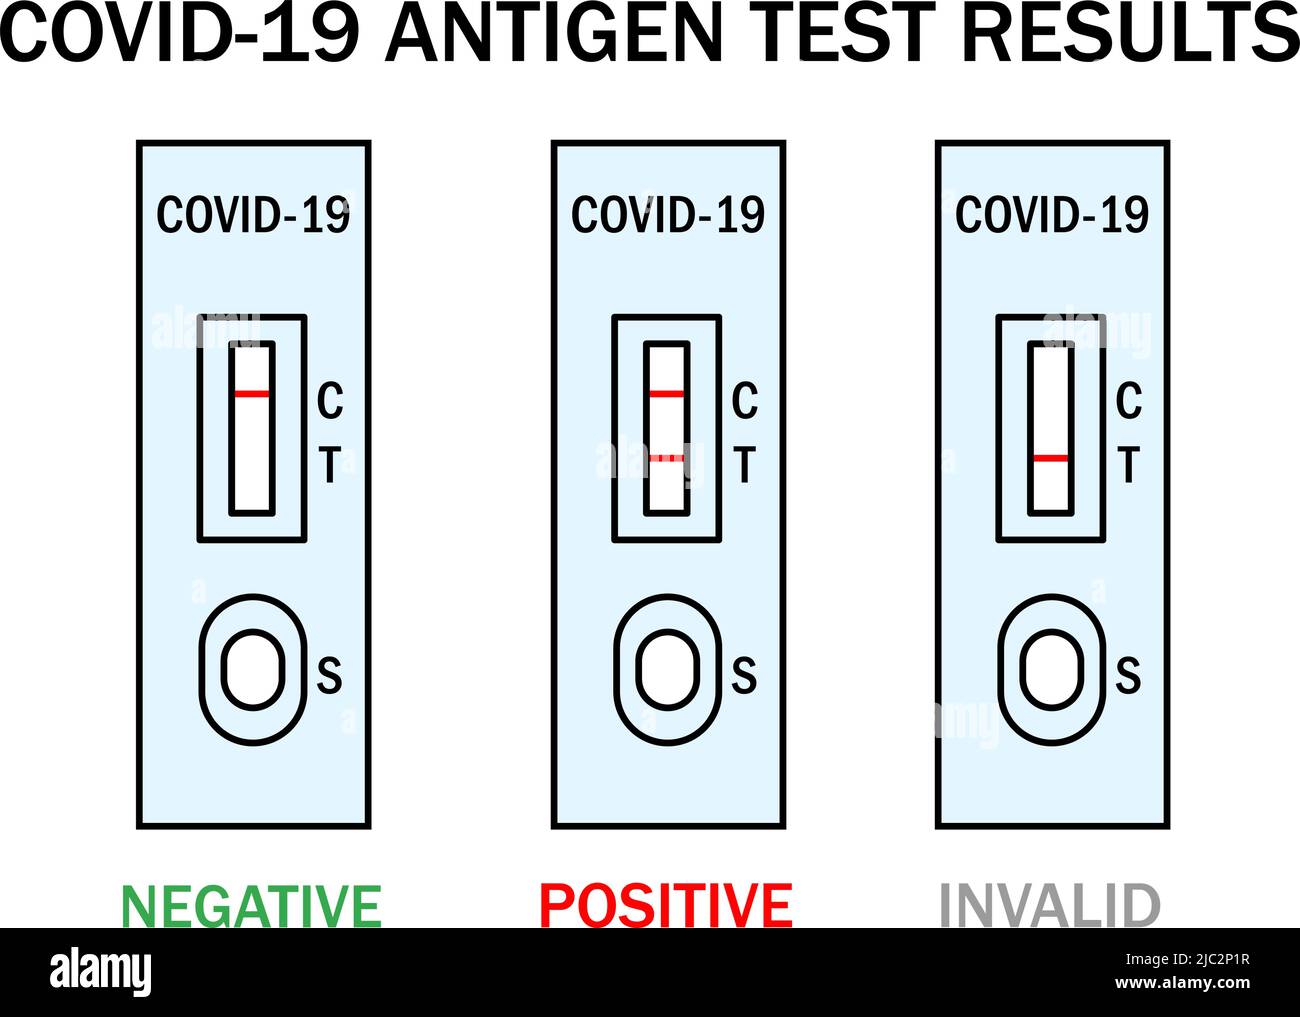 Illustrazione delle istruzioni del kit ATK COVID Rapid Antigen Test. Manuale di test Omicron Epidemic Personal PCR Express. Esempi di risultati positivi, negativi e non validi. Set di icone del profilo vettoriale medico Covid-19. Illustrazione Vettoriale